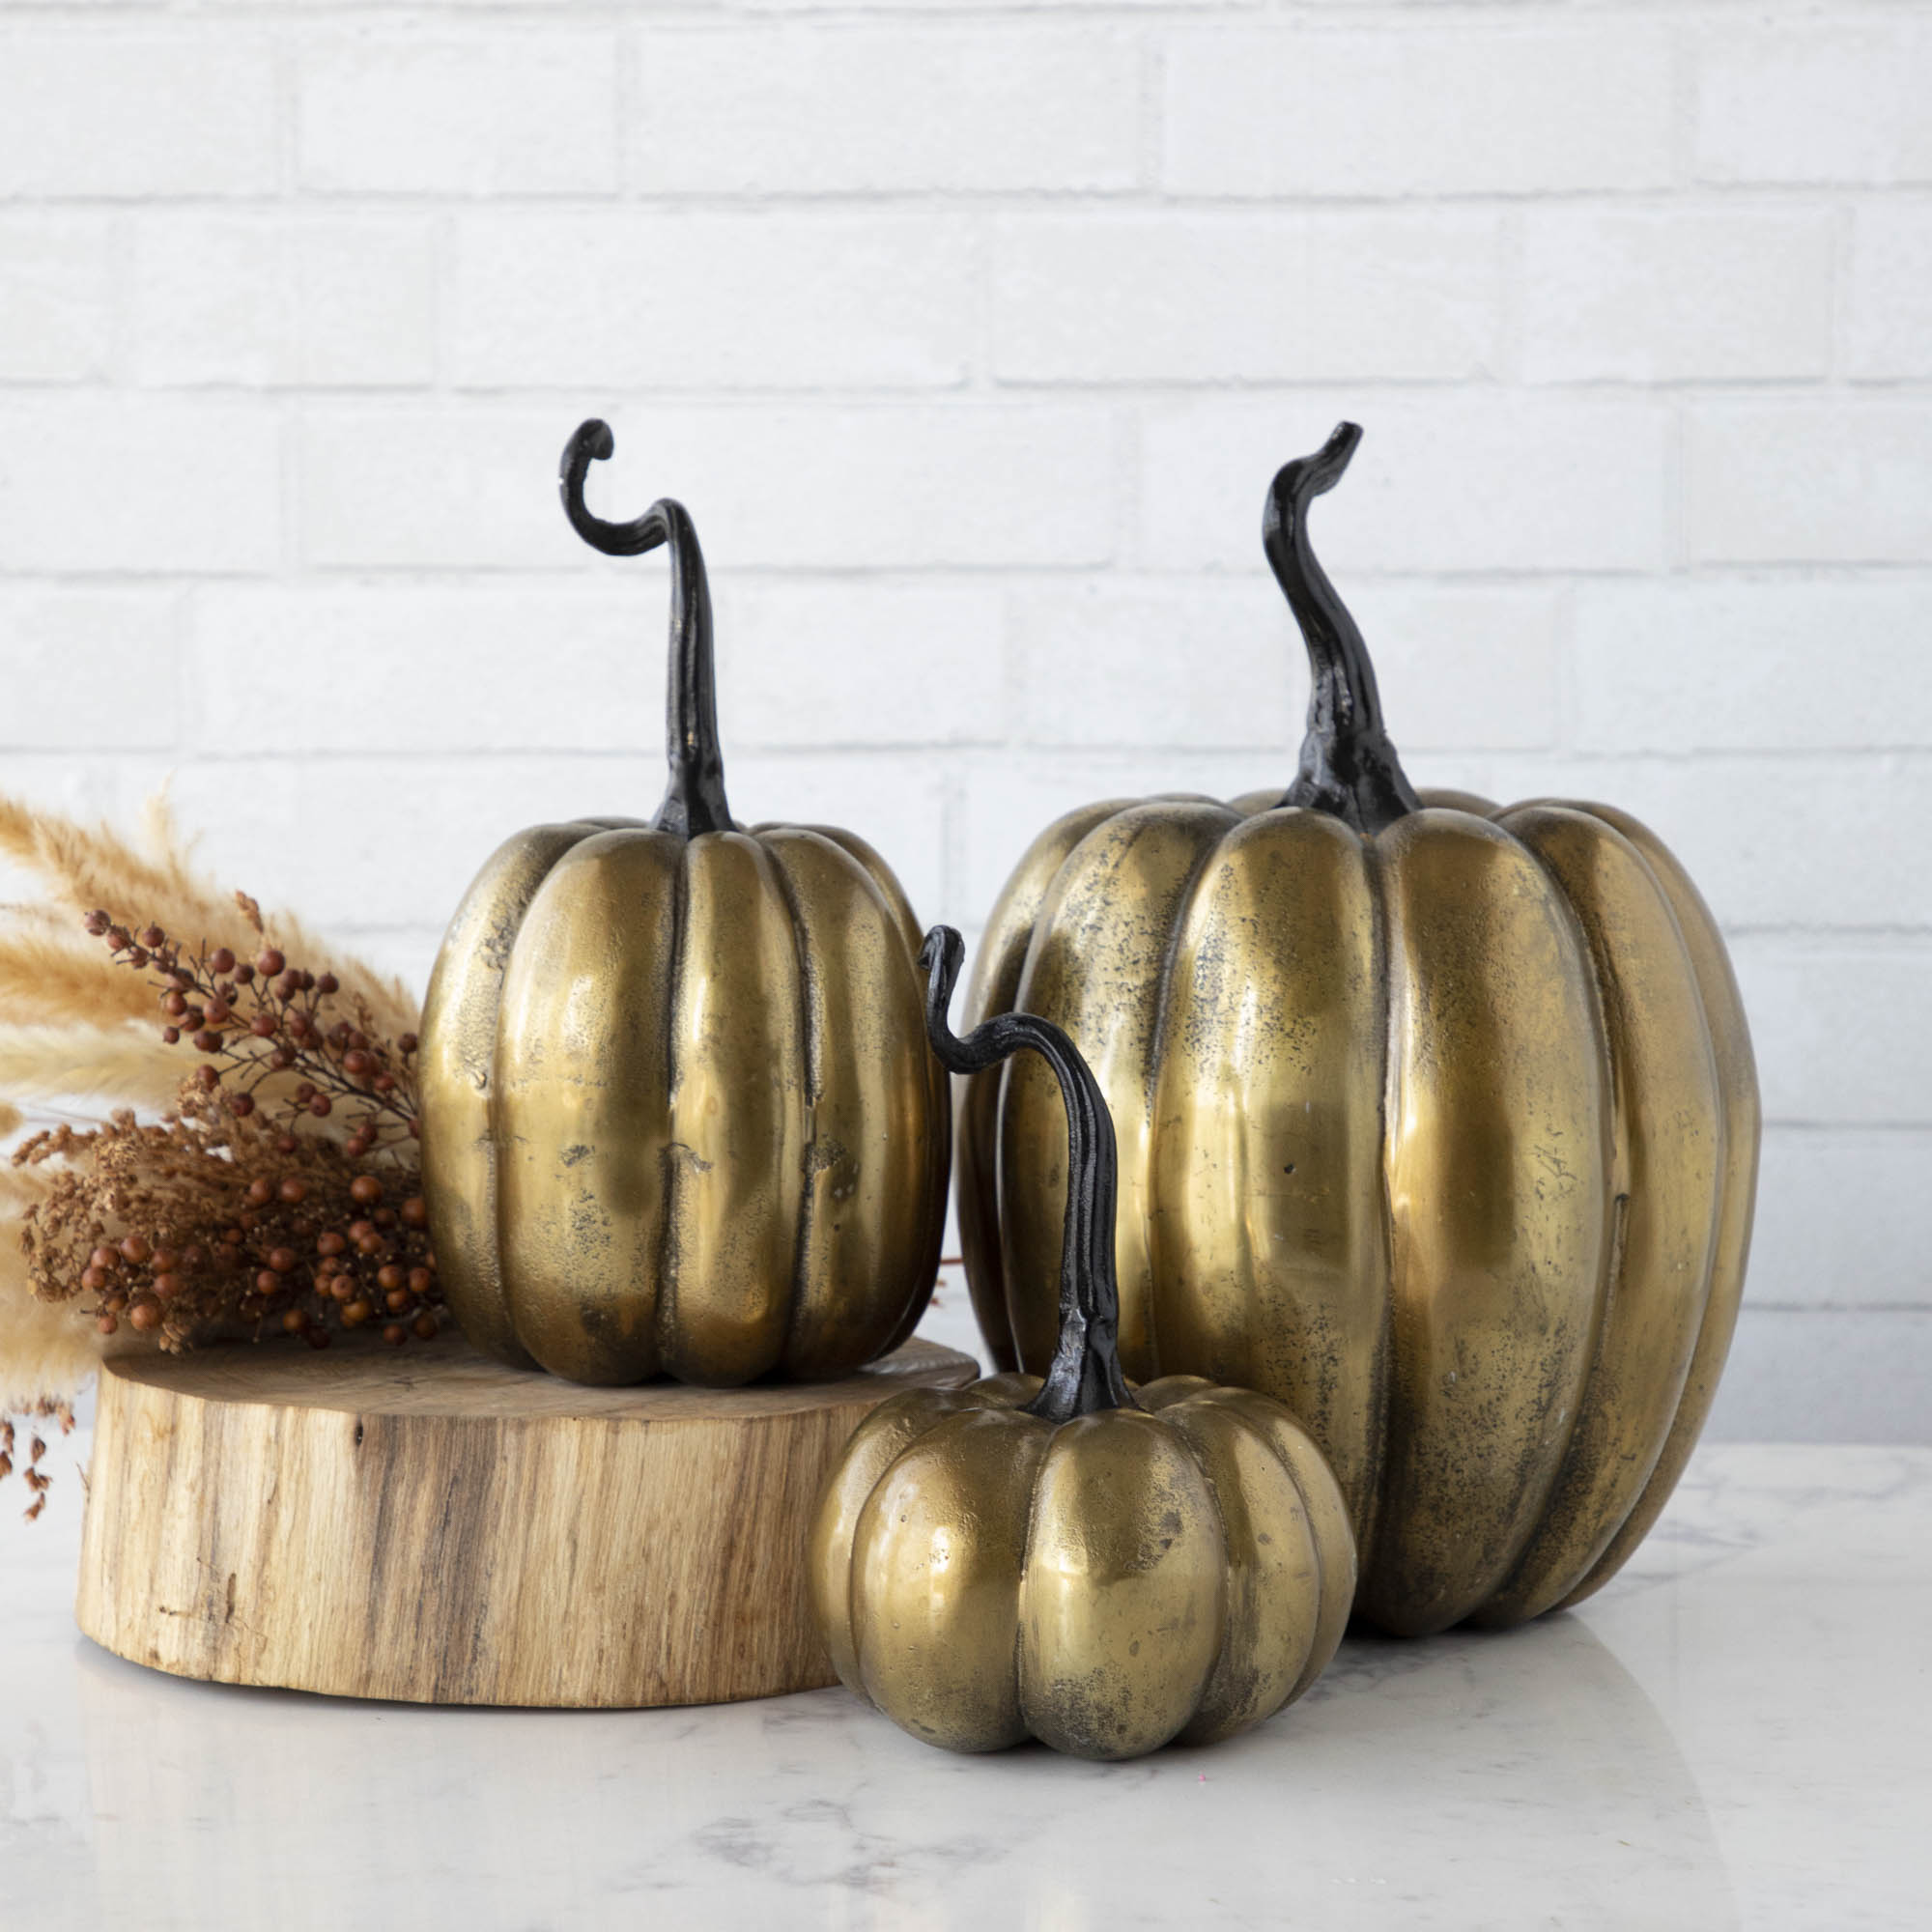 Three handmade Accent Decor brass pumpkins on a wooden table.